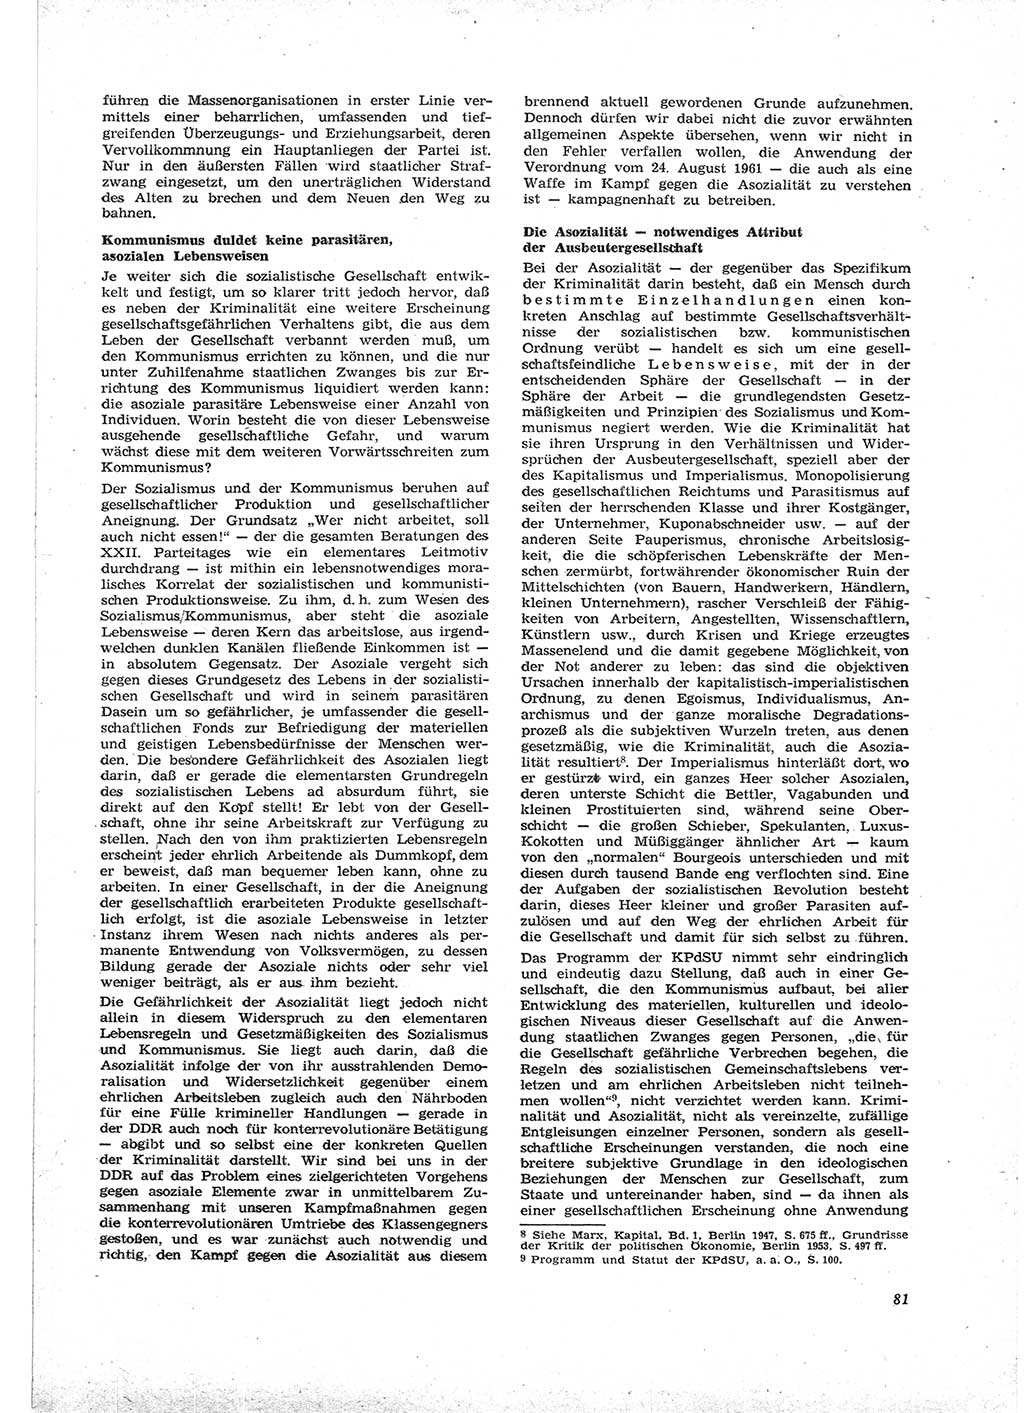 Neue Justiz (NJ), Zeitschrift für Recht und Rechtswissenschaft [Deutsche Demokratische Republik (DDR)], 16. Jahrgang 1962, Seite 81 (NJ DDR 1962, S. 81)